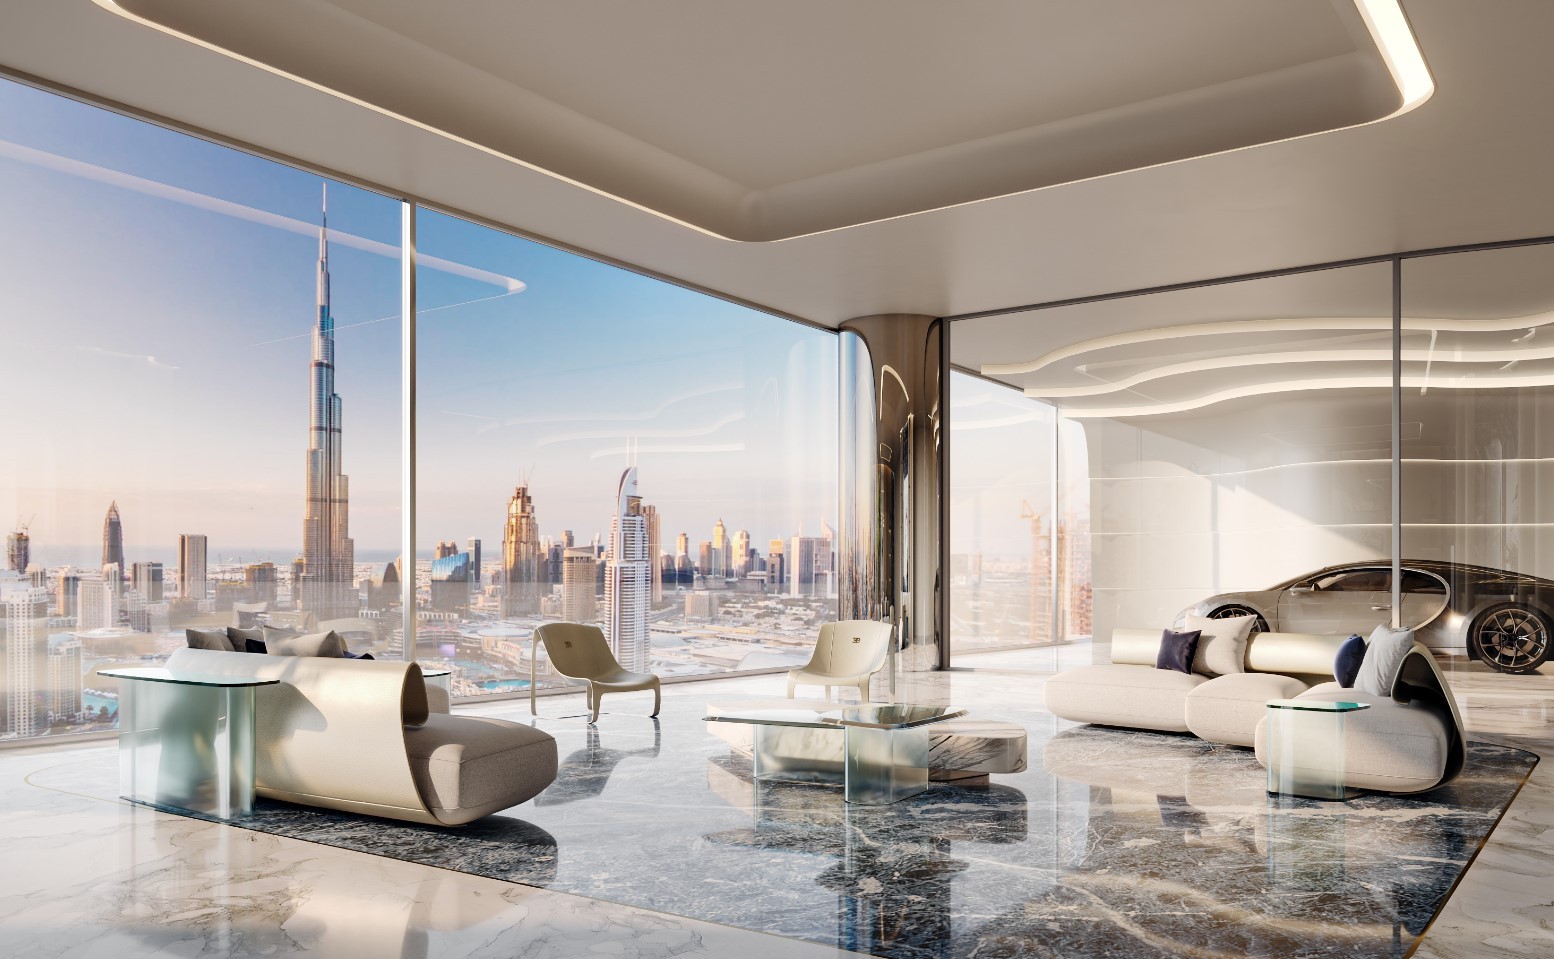 بوجاتي تعلن عن بناء برج سكني فاخر في قلب مدينة دبي! 54